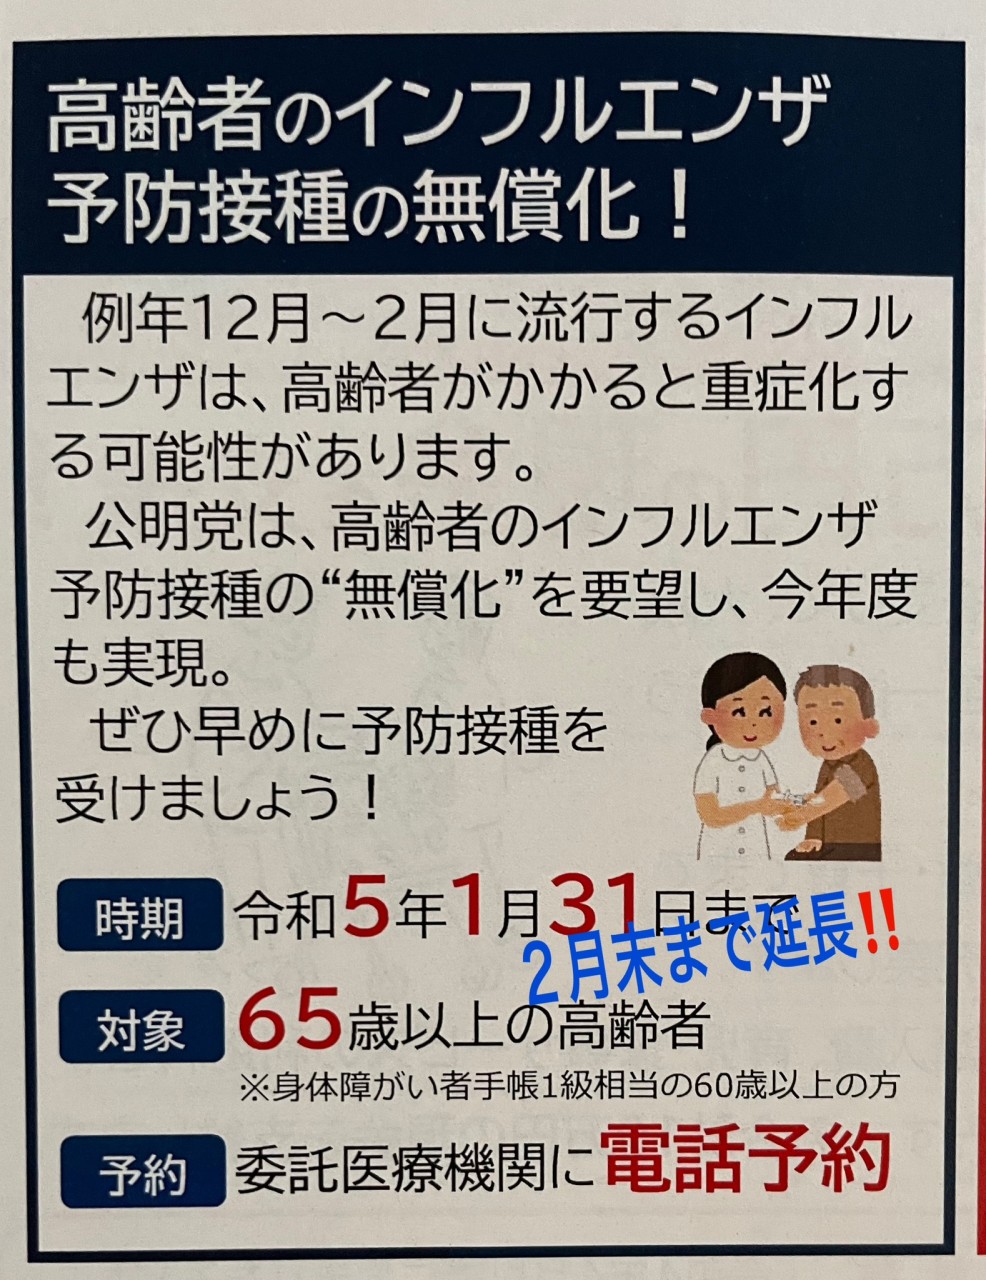 No.575 「高齢者のインフルエンザ予防接種」及び「大阪市公害健康被害被認定者のインフルエンザ予防接種」